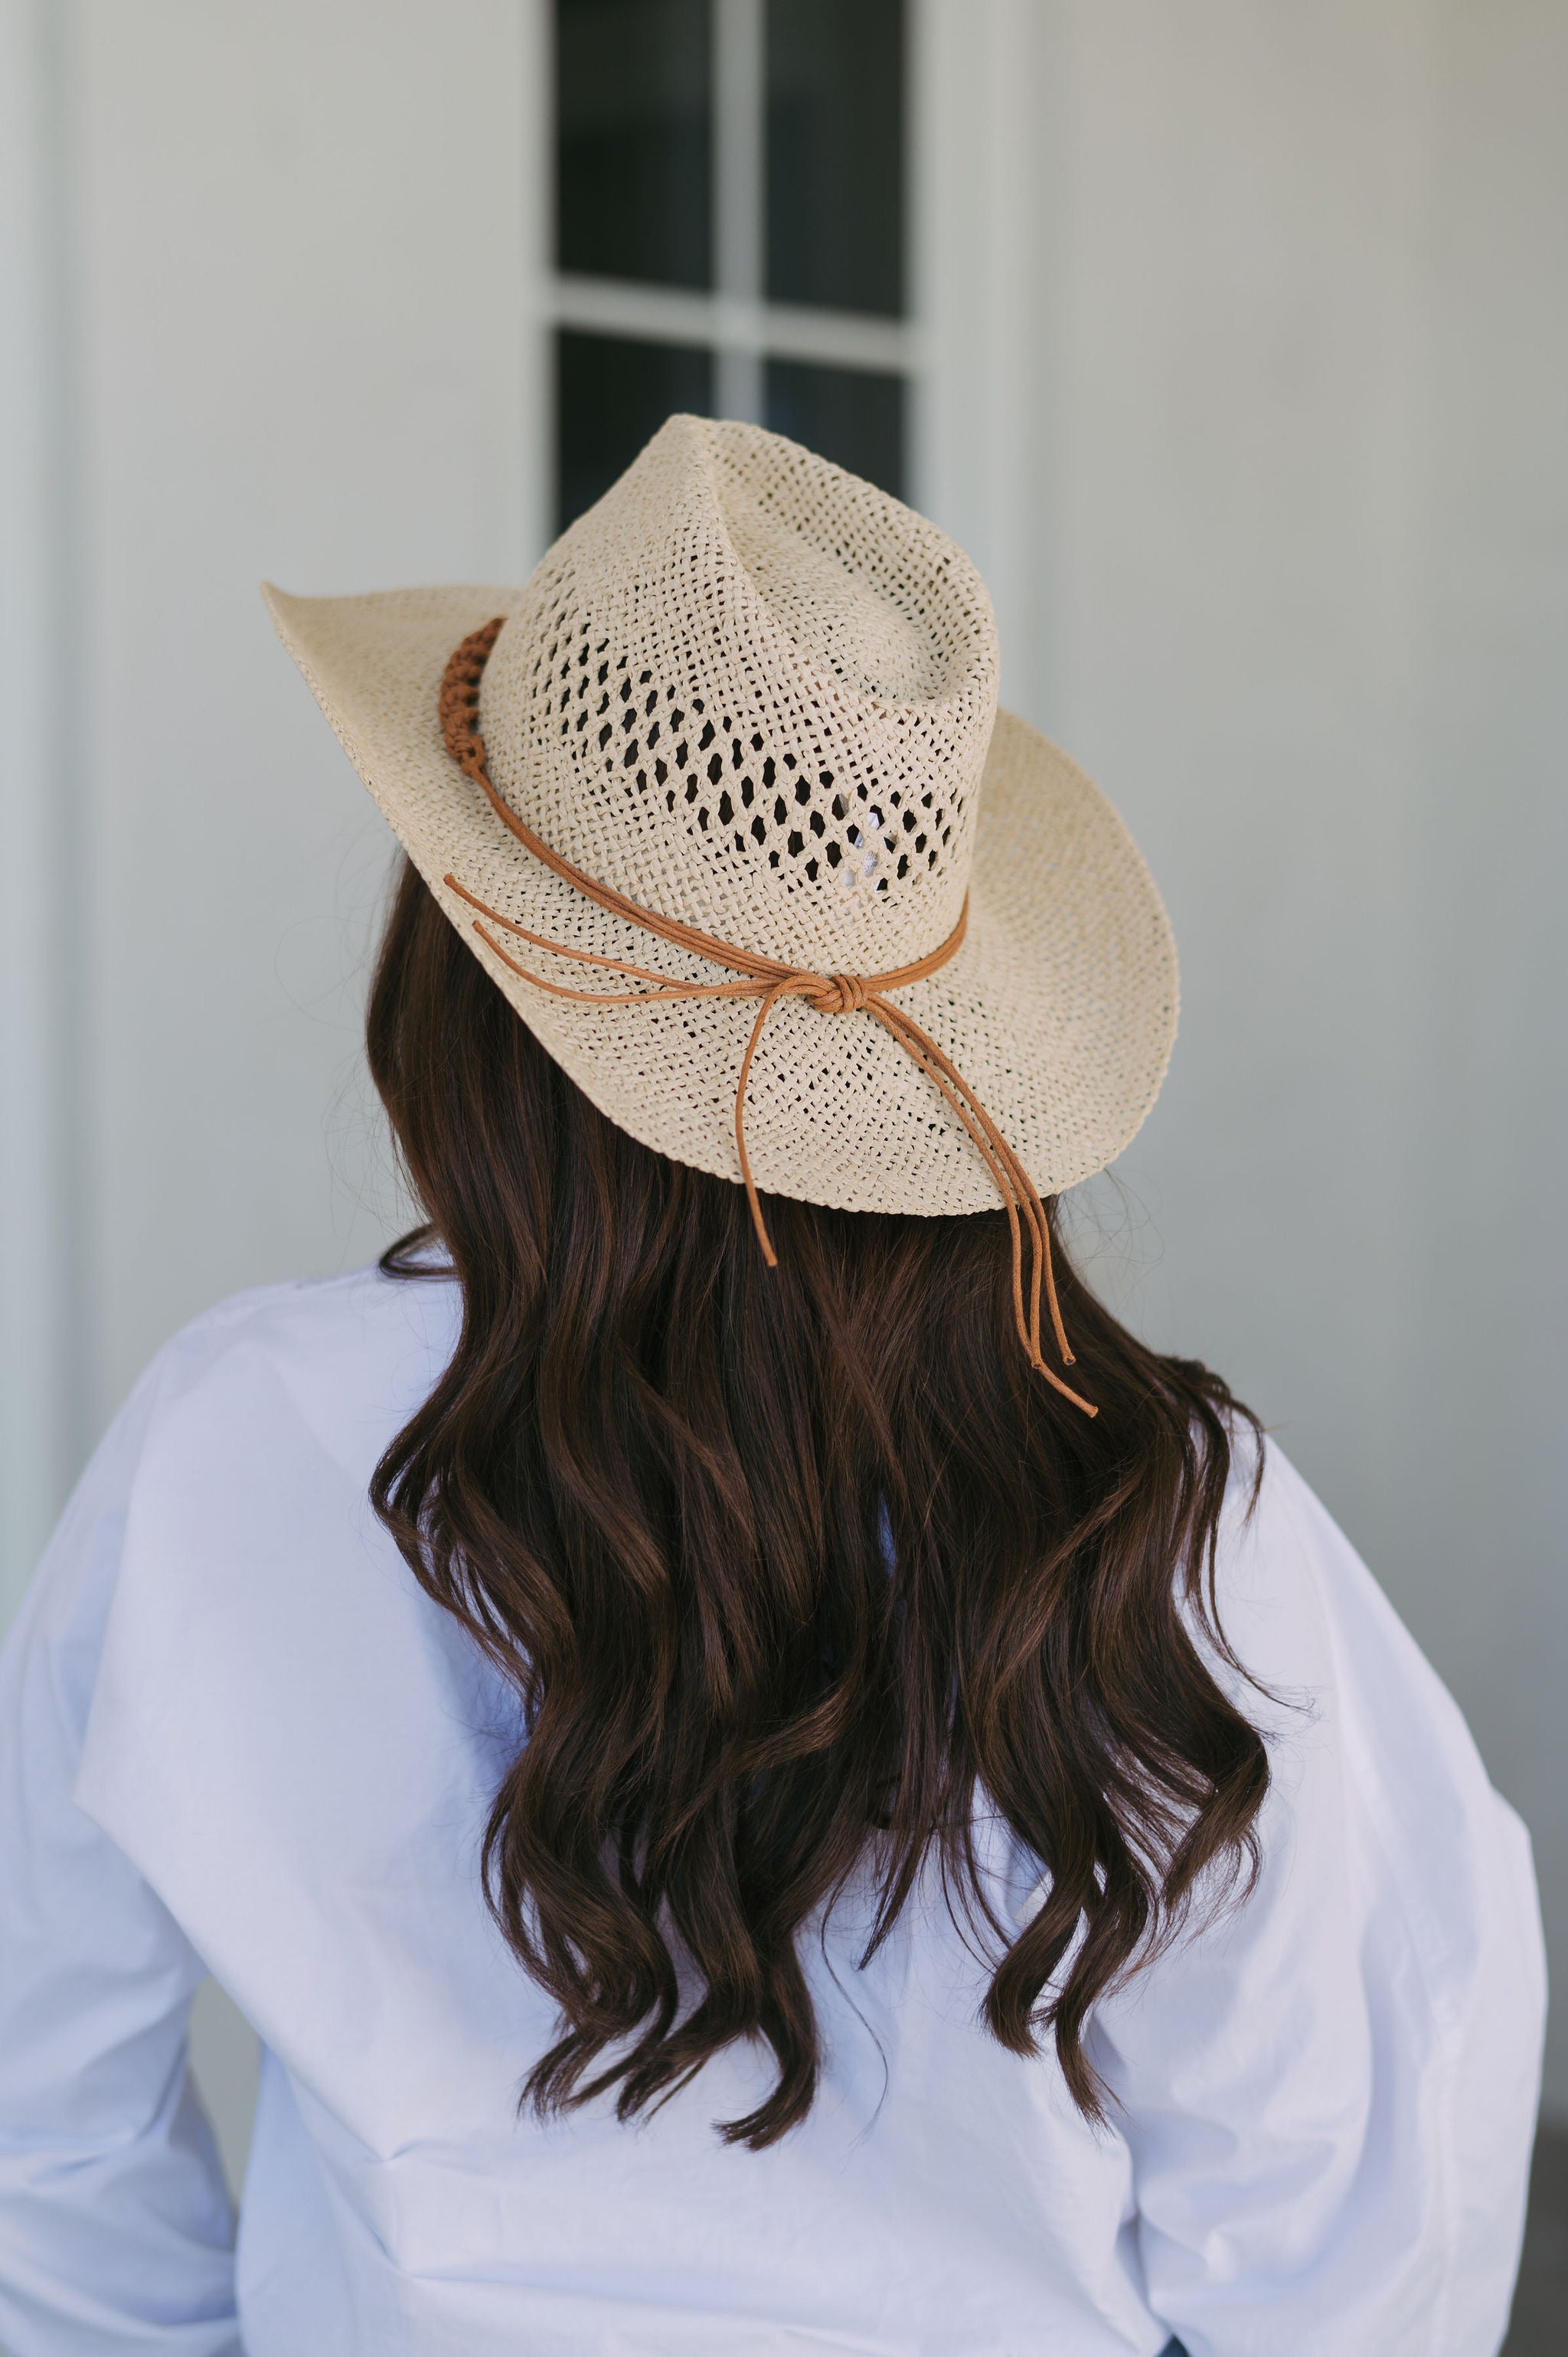 Sally Straw Cowboy Hat